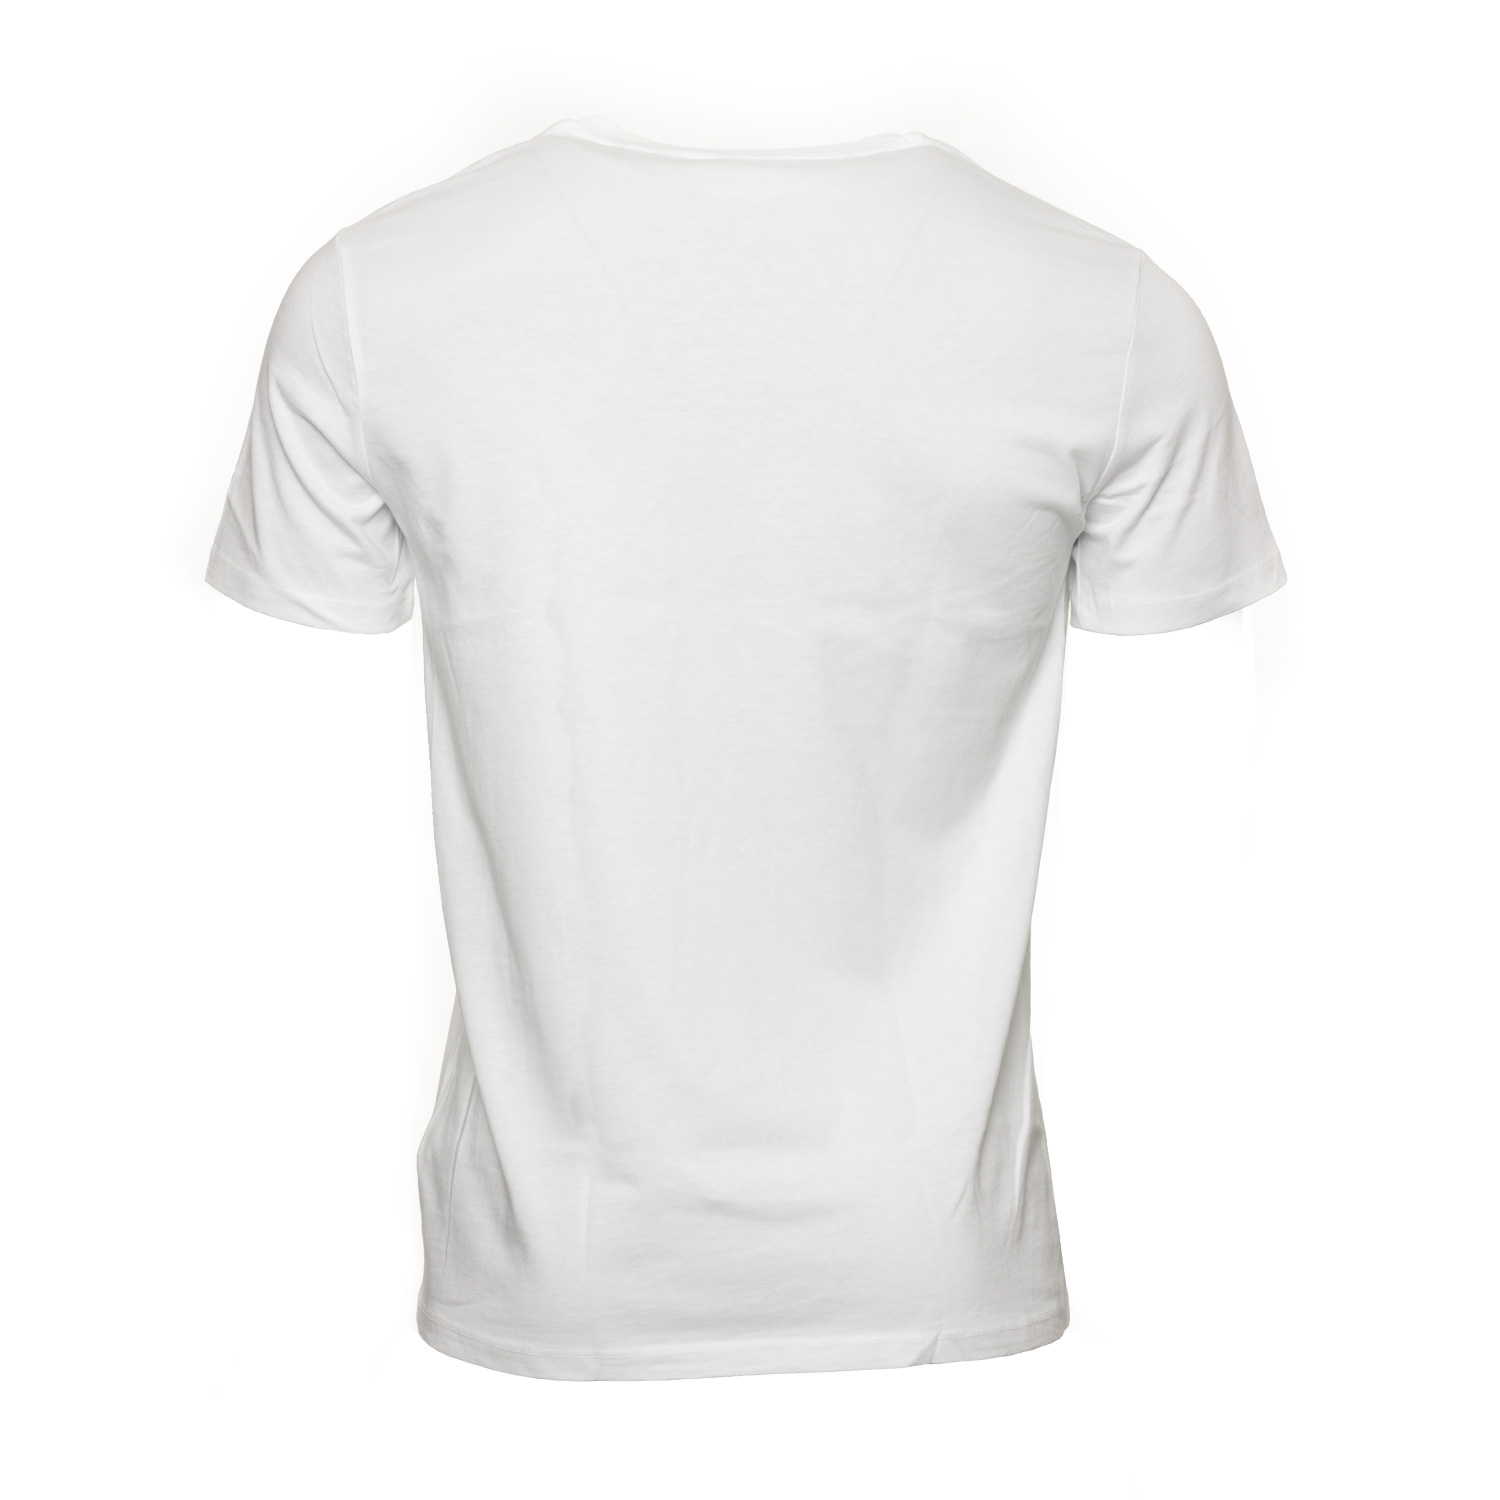 Radeberger T-Shirt Retro, Unisex, weiß